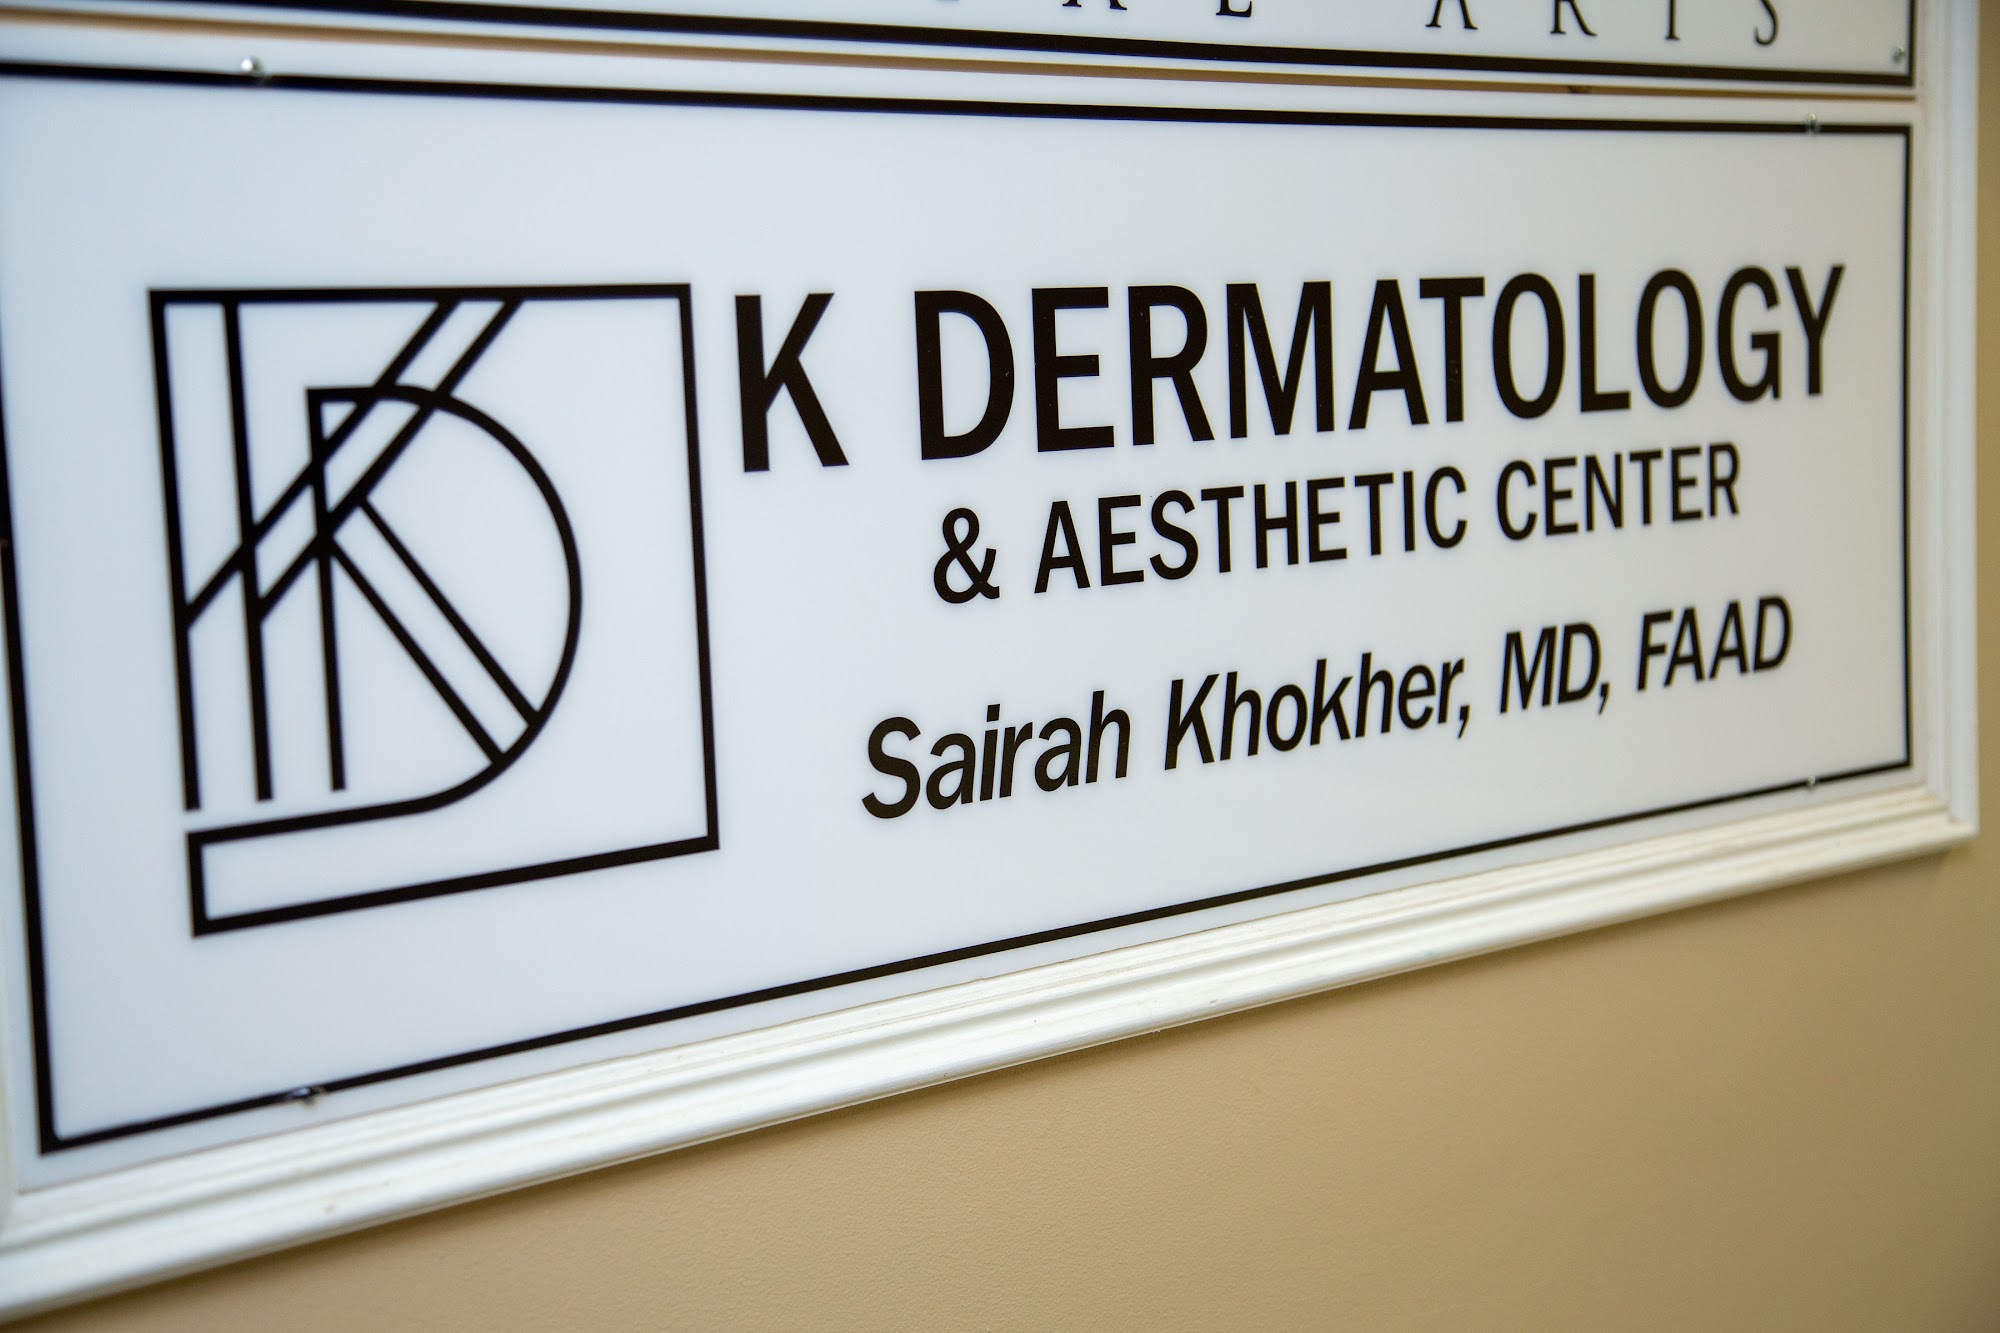 K Dermatology & Aesthetic Center